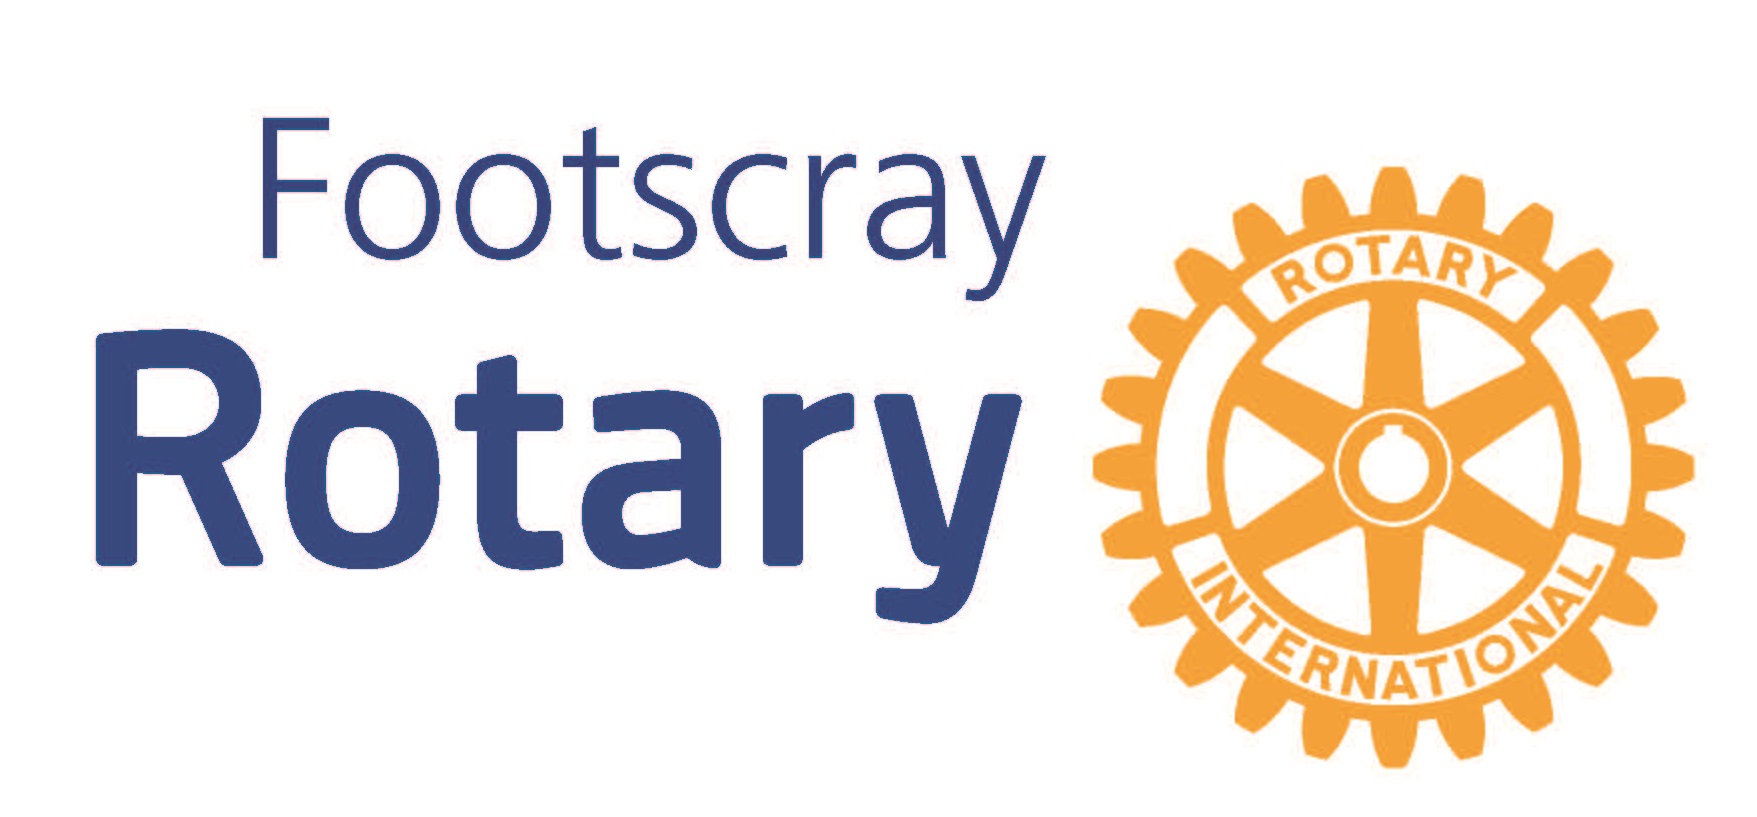 Footscray-Rotary-Logo.jpg